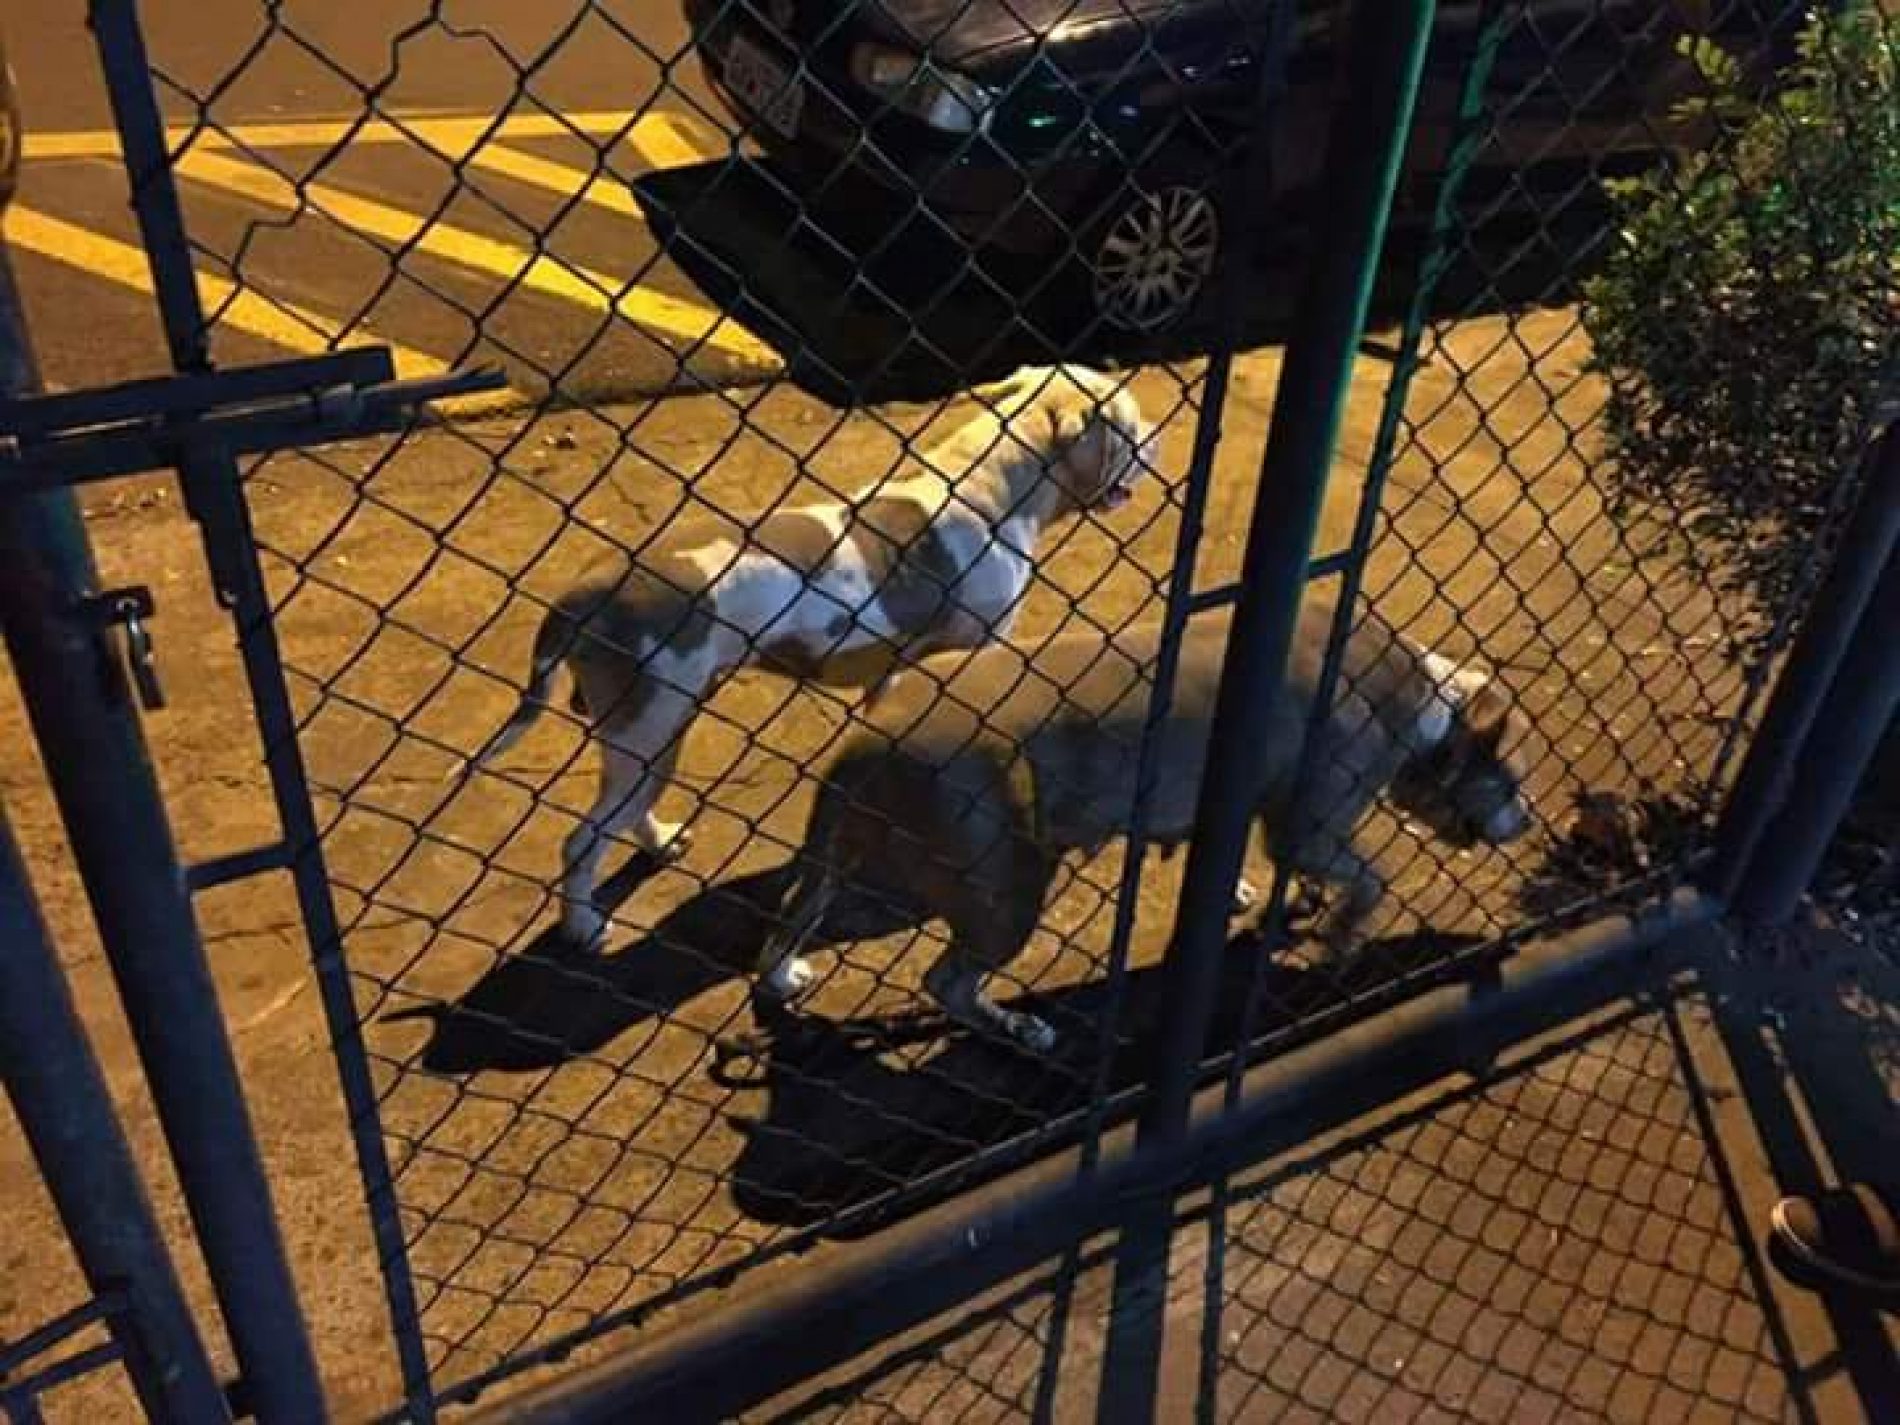 BARRETOS: Soltos na rua, cães da raça Pitbull atacam clientes em restaurante e um deles fere Policial Militar